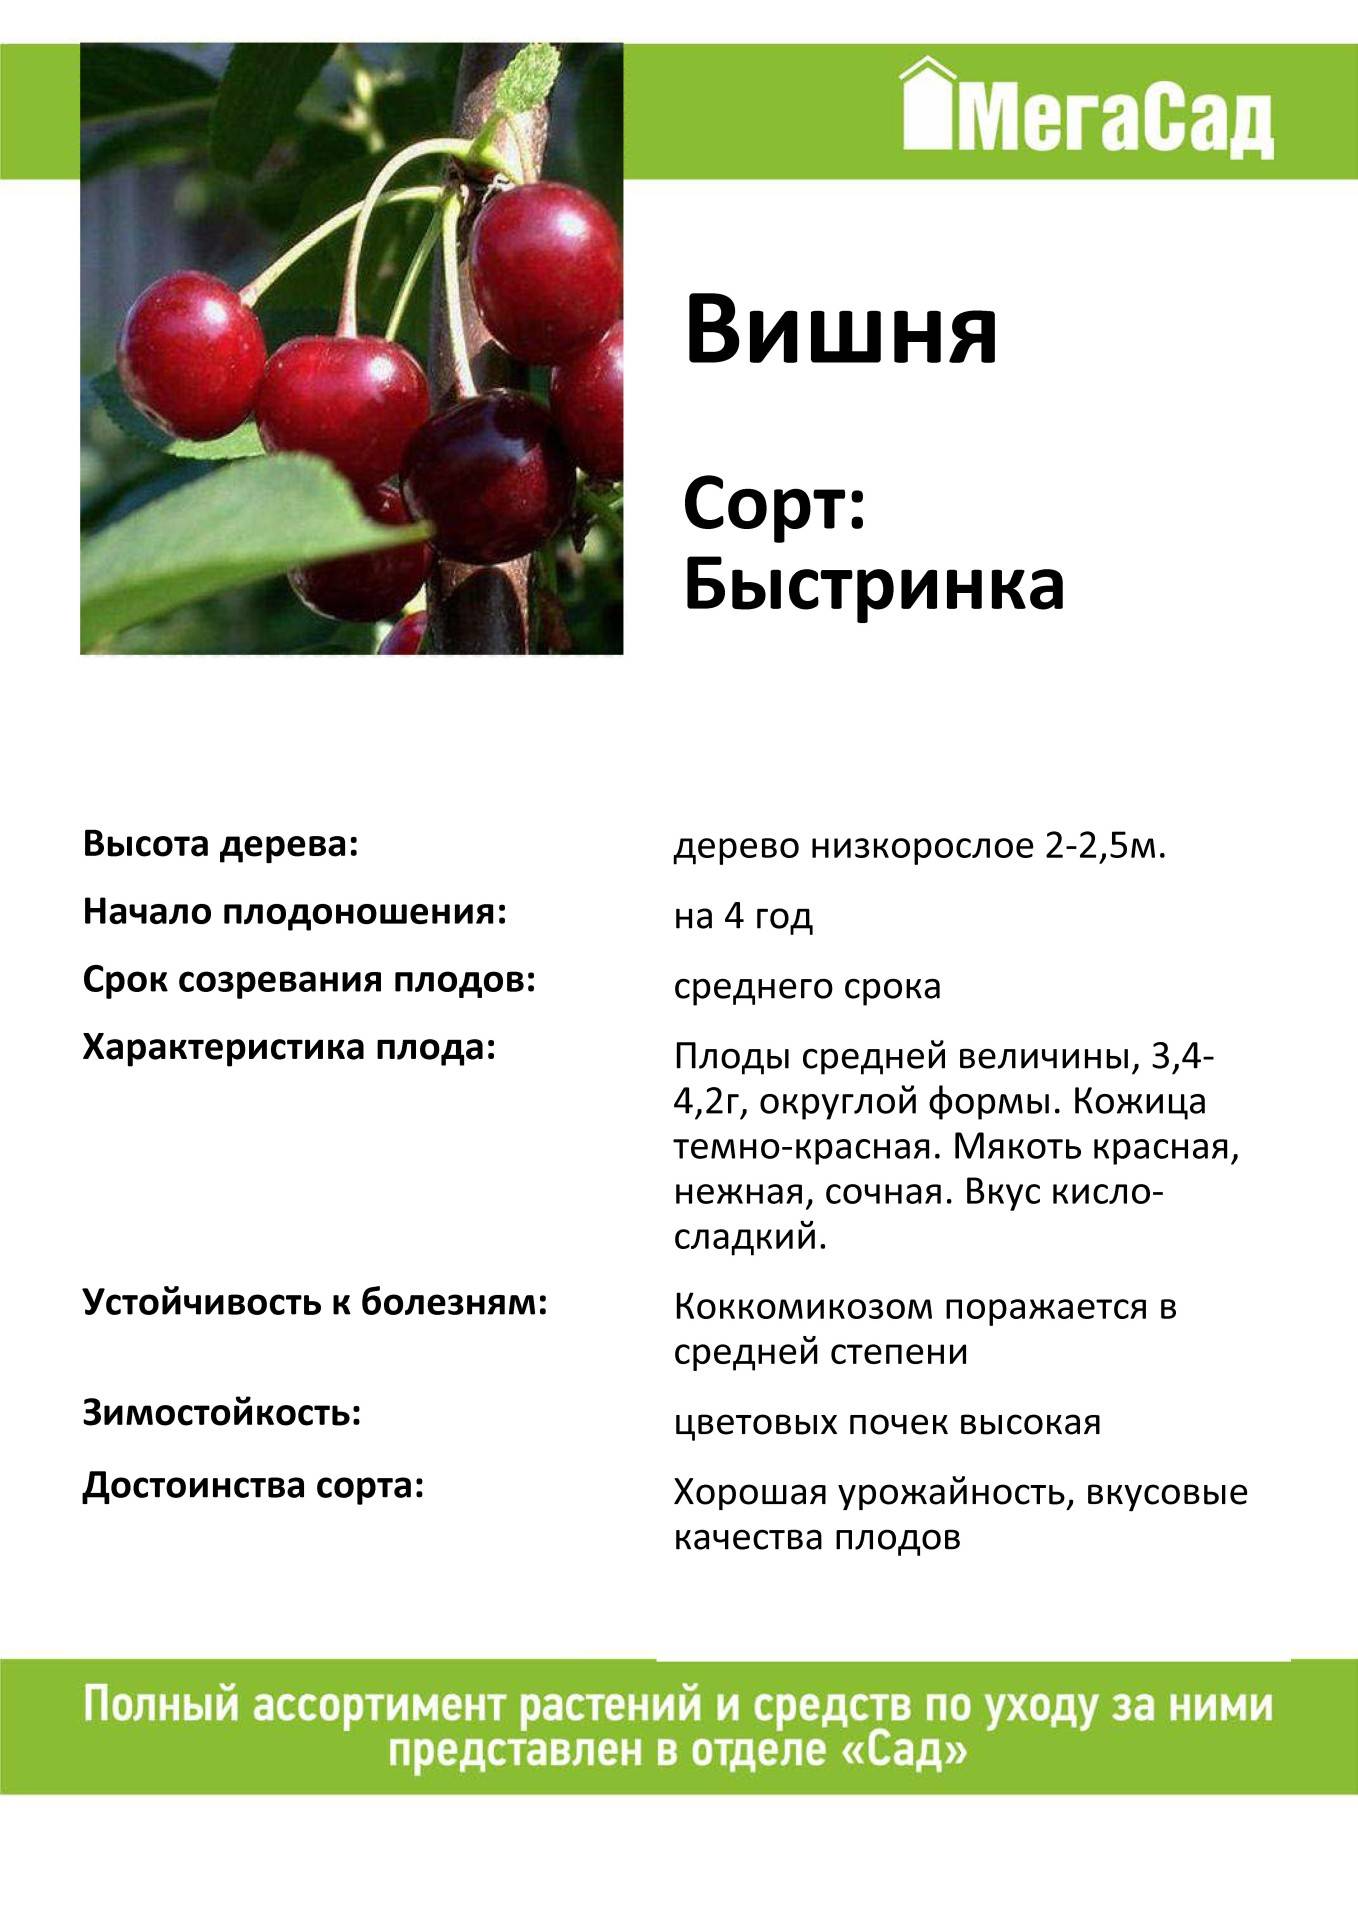 Черешня ленинградская черная: отзывы, фото, описание морозостойкого сорта